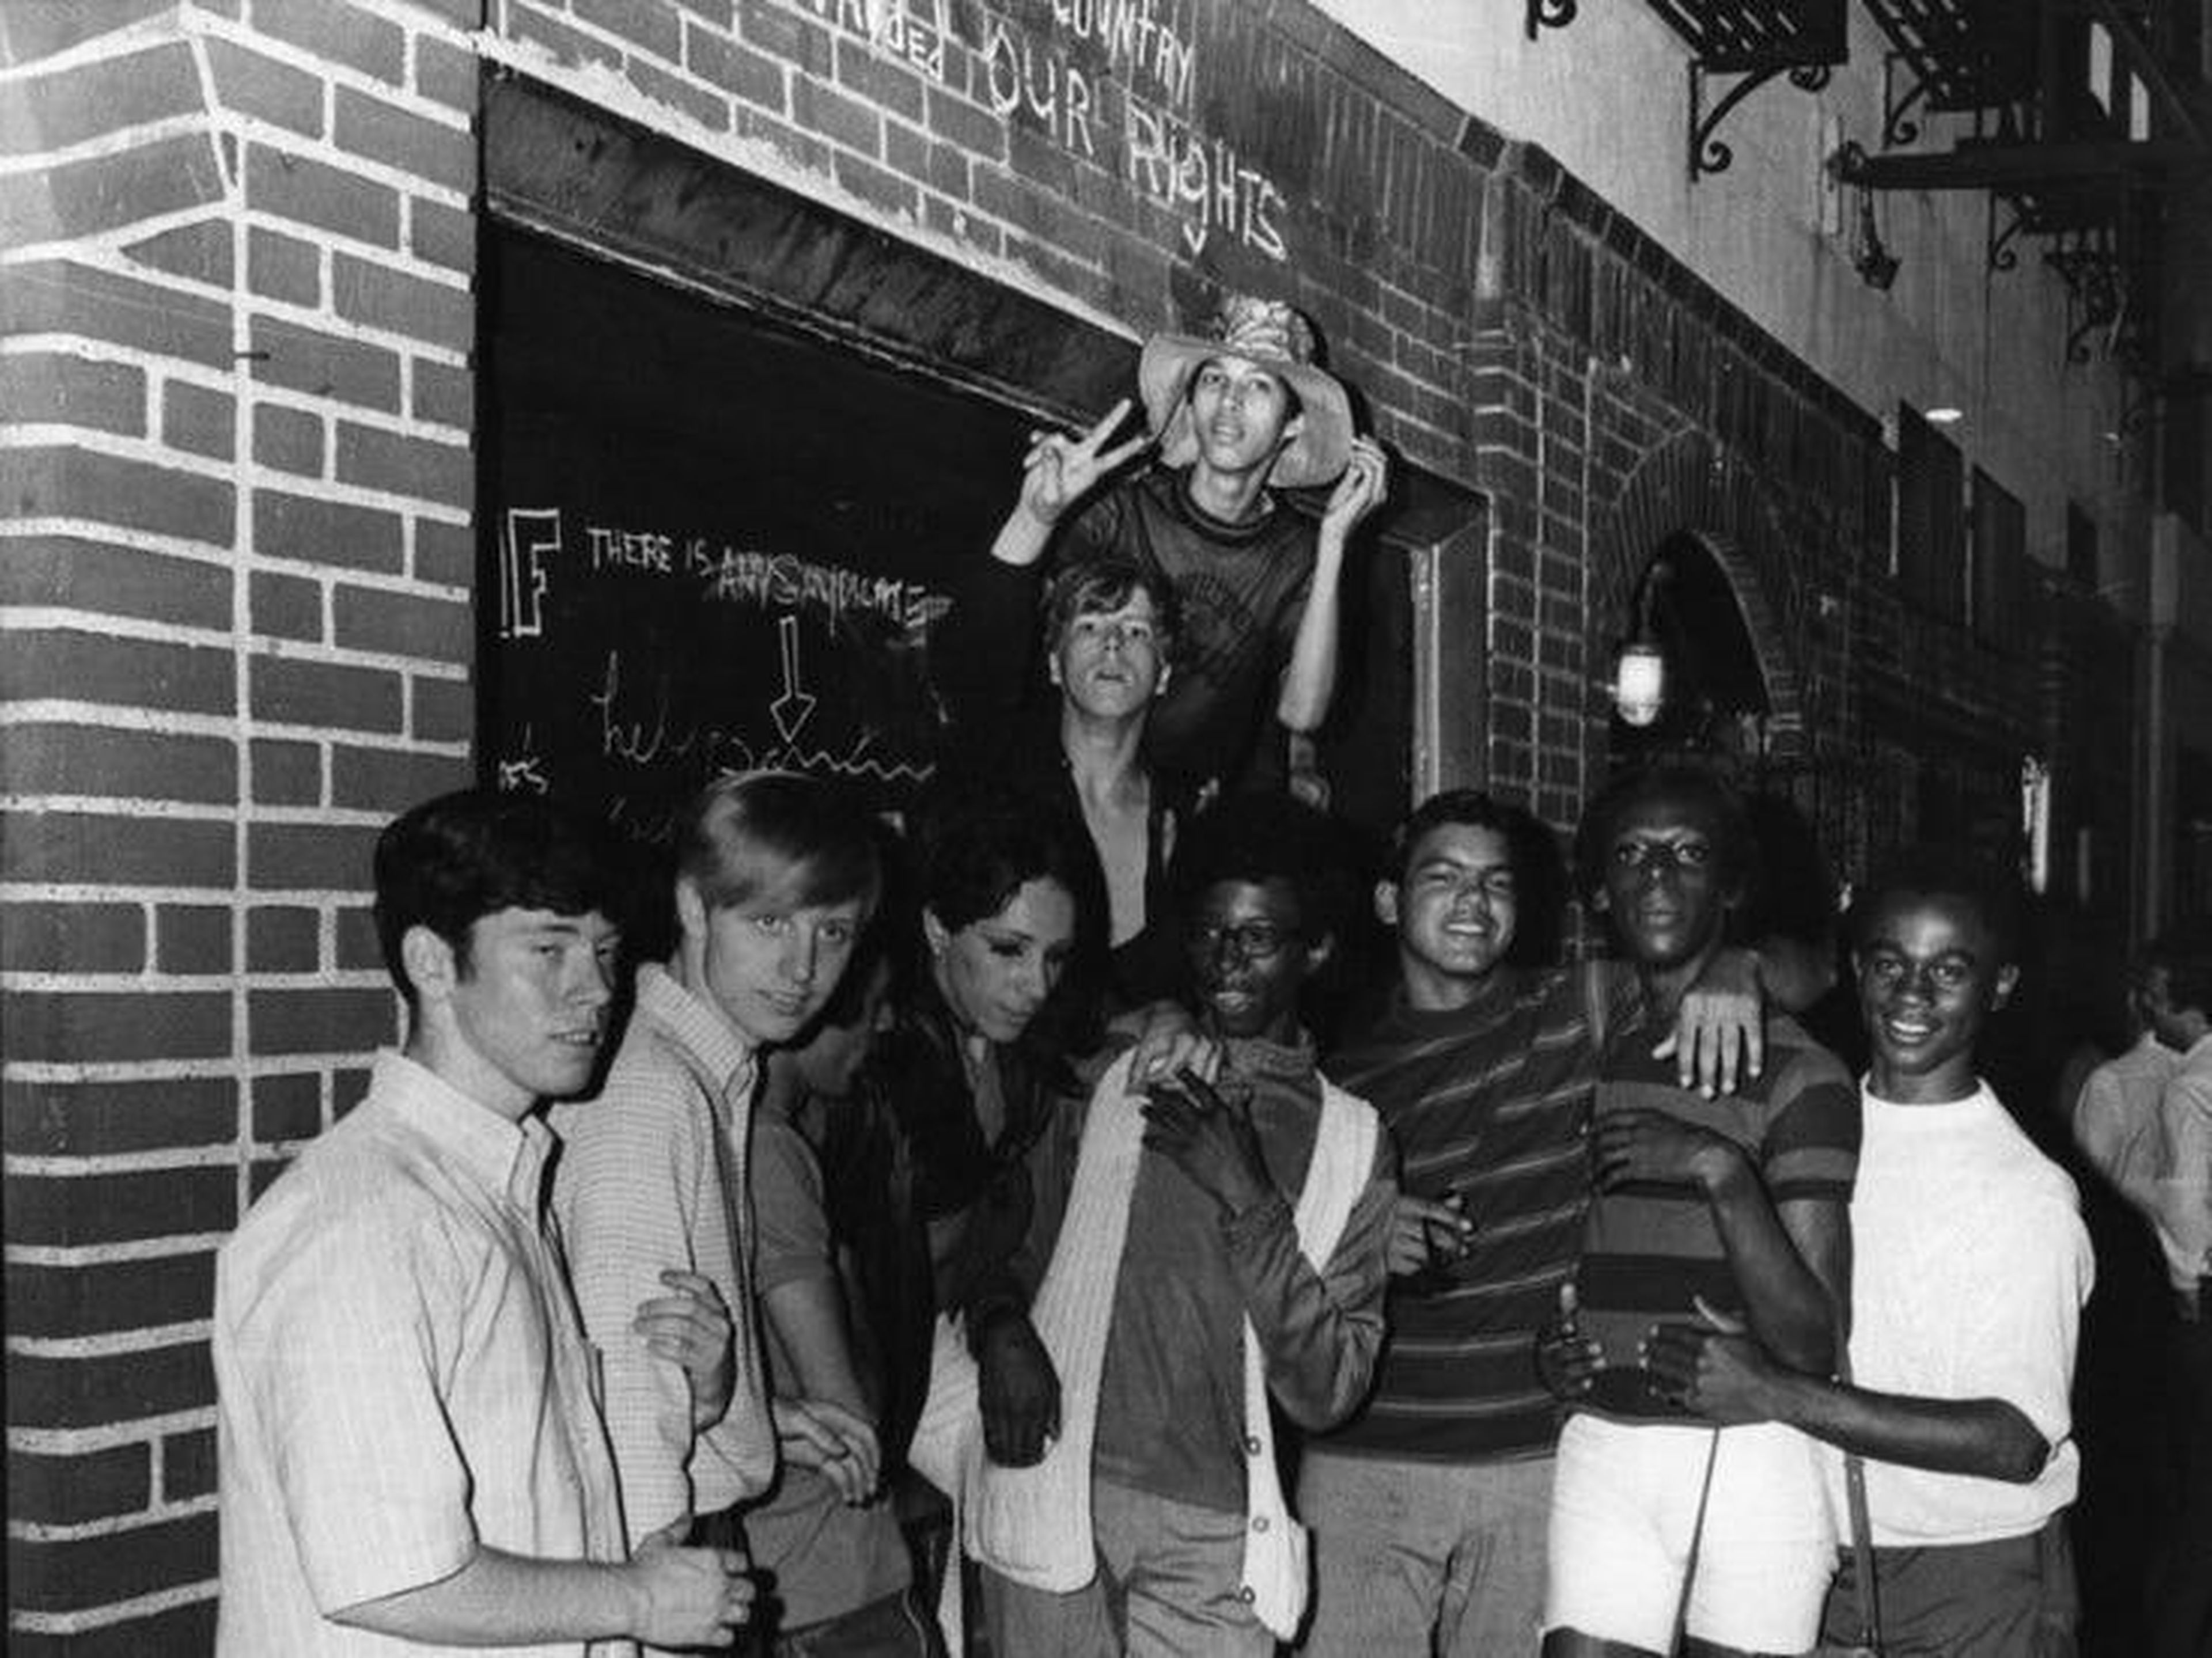 Gente posando frente al Stonewall Inn en la ciudad de Nueva York, alrededor de 1969.